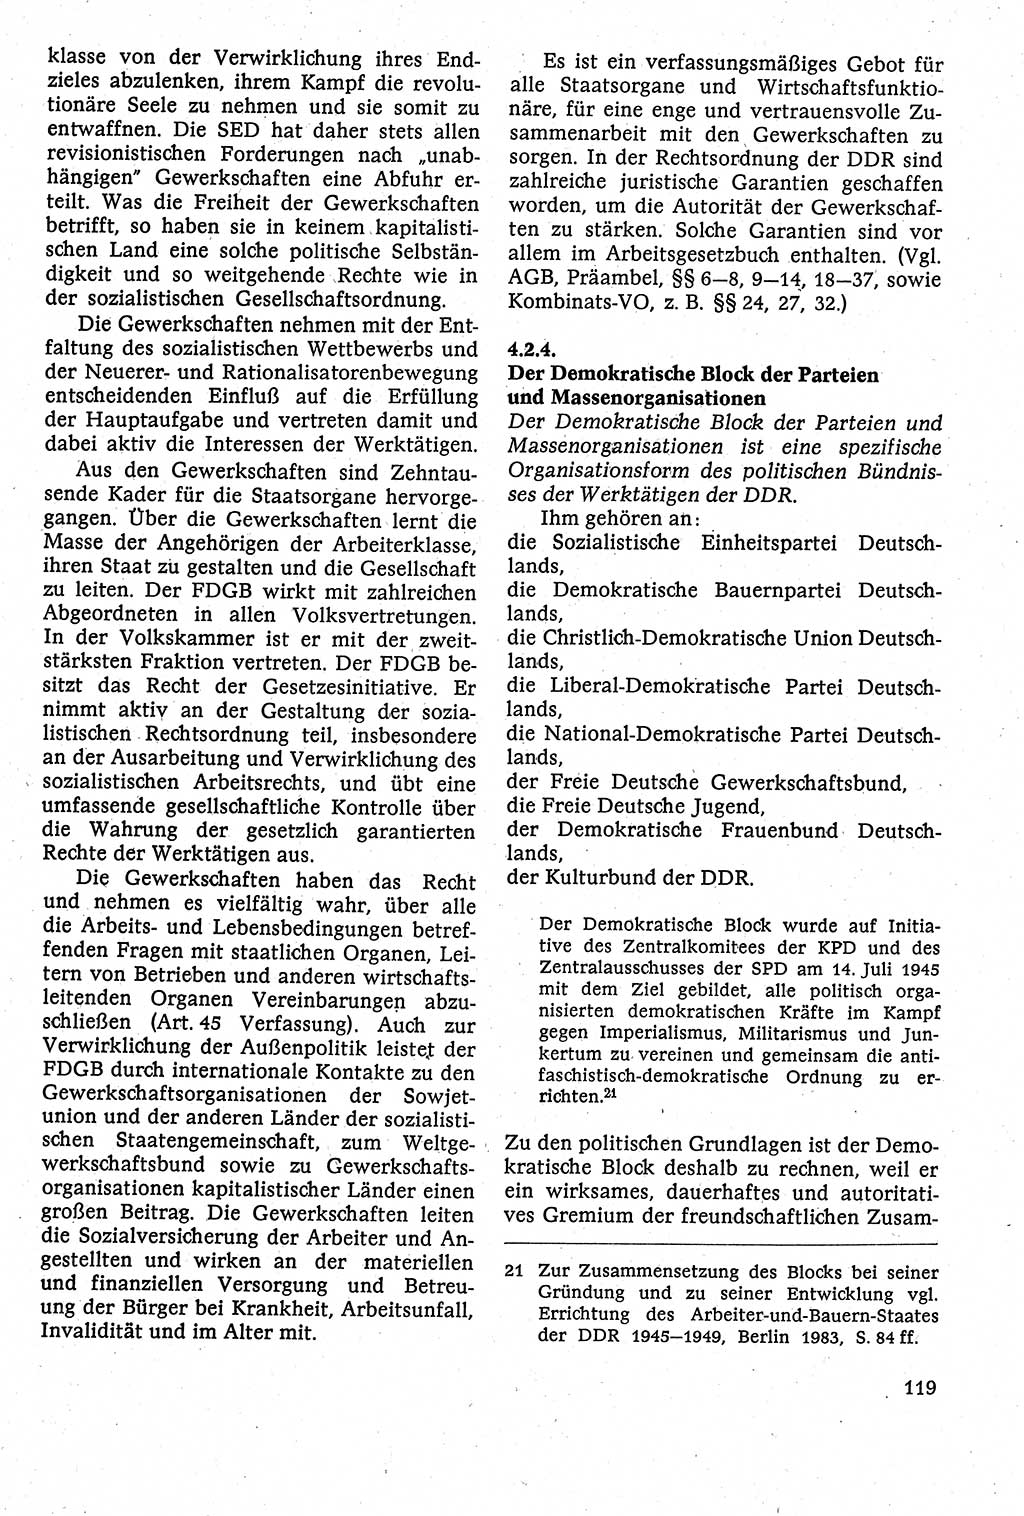 Staatsrecht der DDR [Deutsche Demokratische Republik (DDR)], Lehrbuch 1984, Seite 119 (St.-R. DDR Lb. 1984, S. 119)